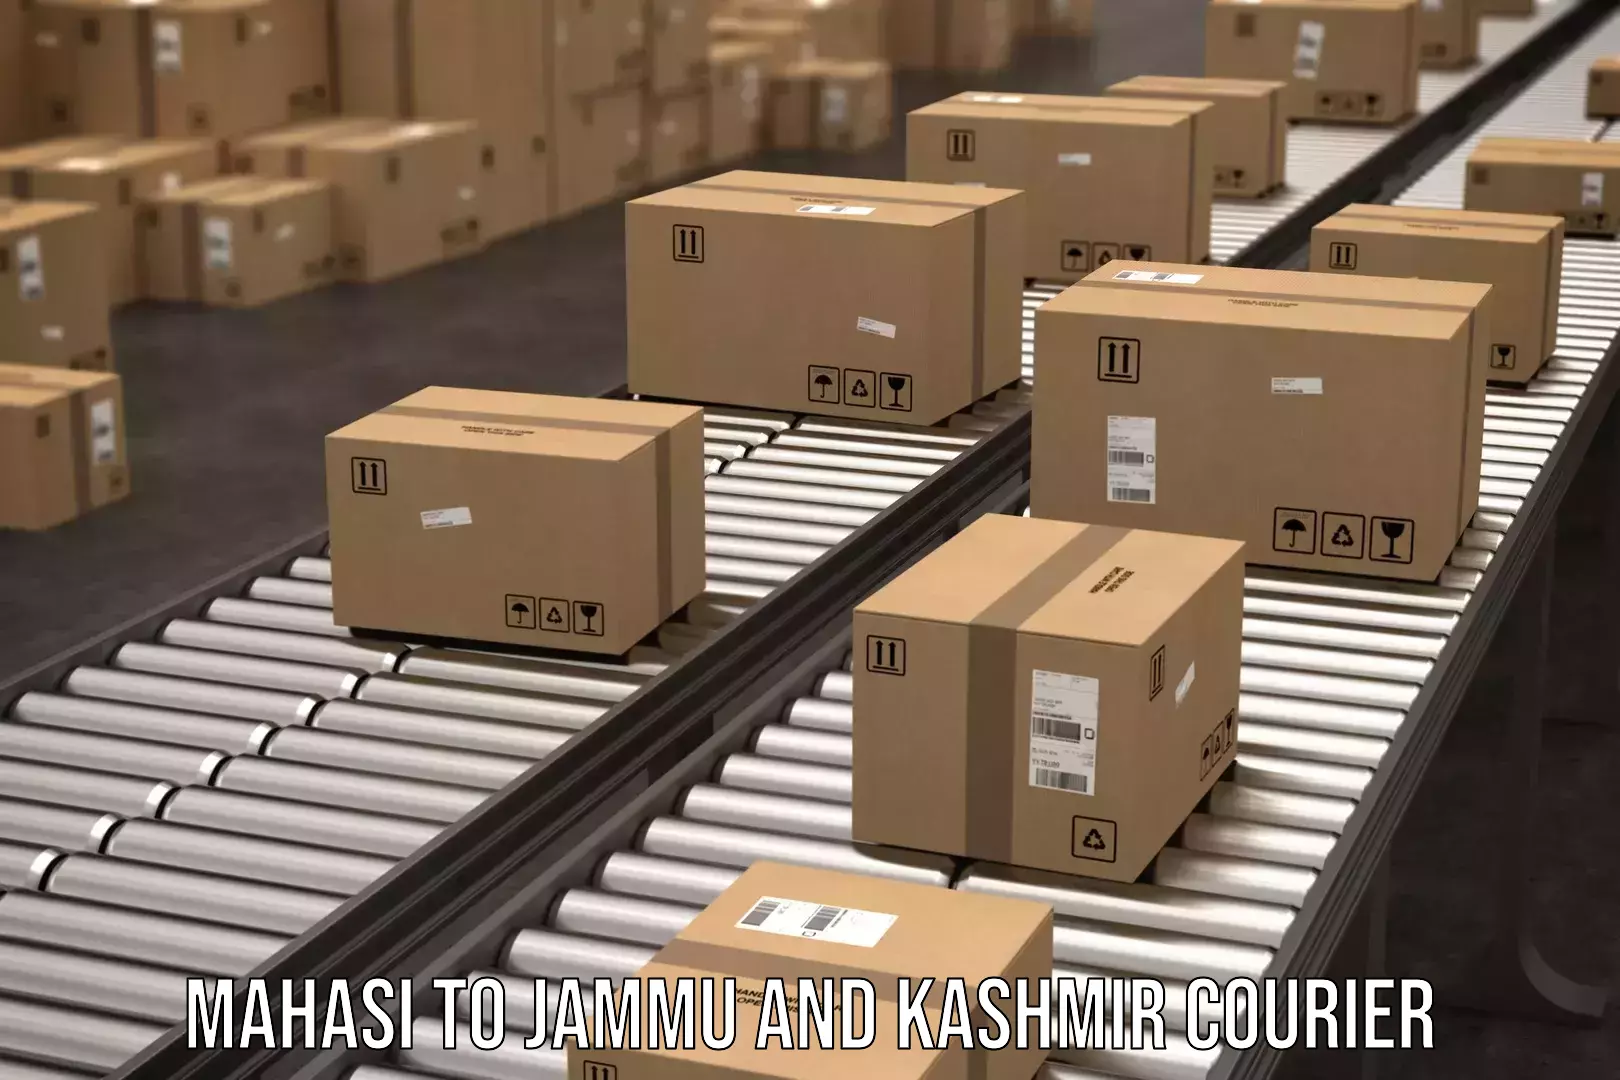 Express logistics service Mahasi to Jammu and Kashmir